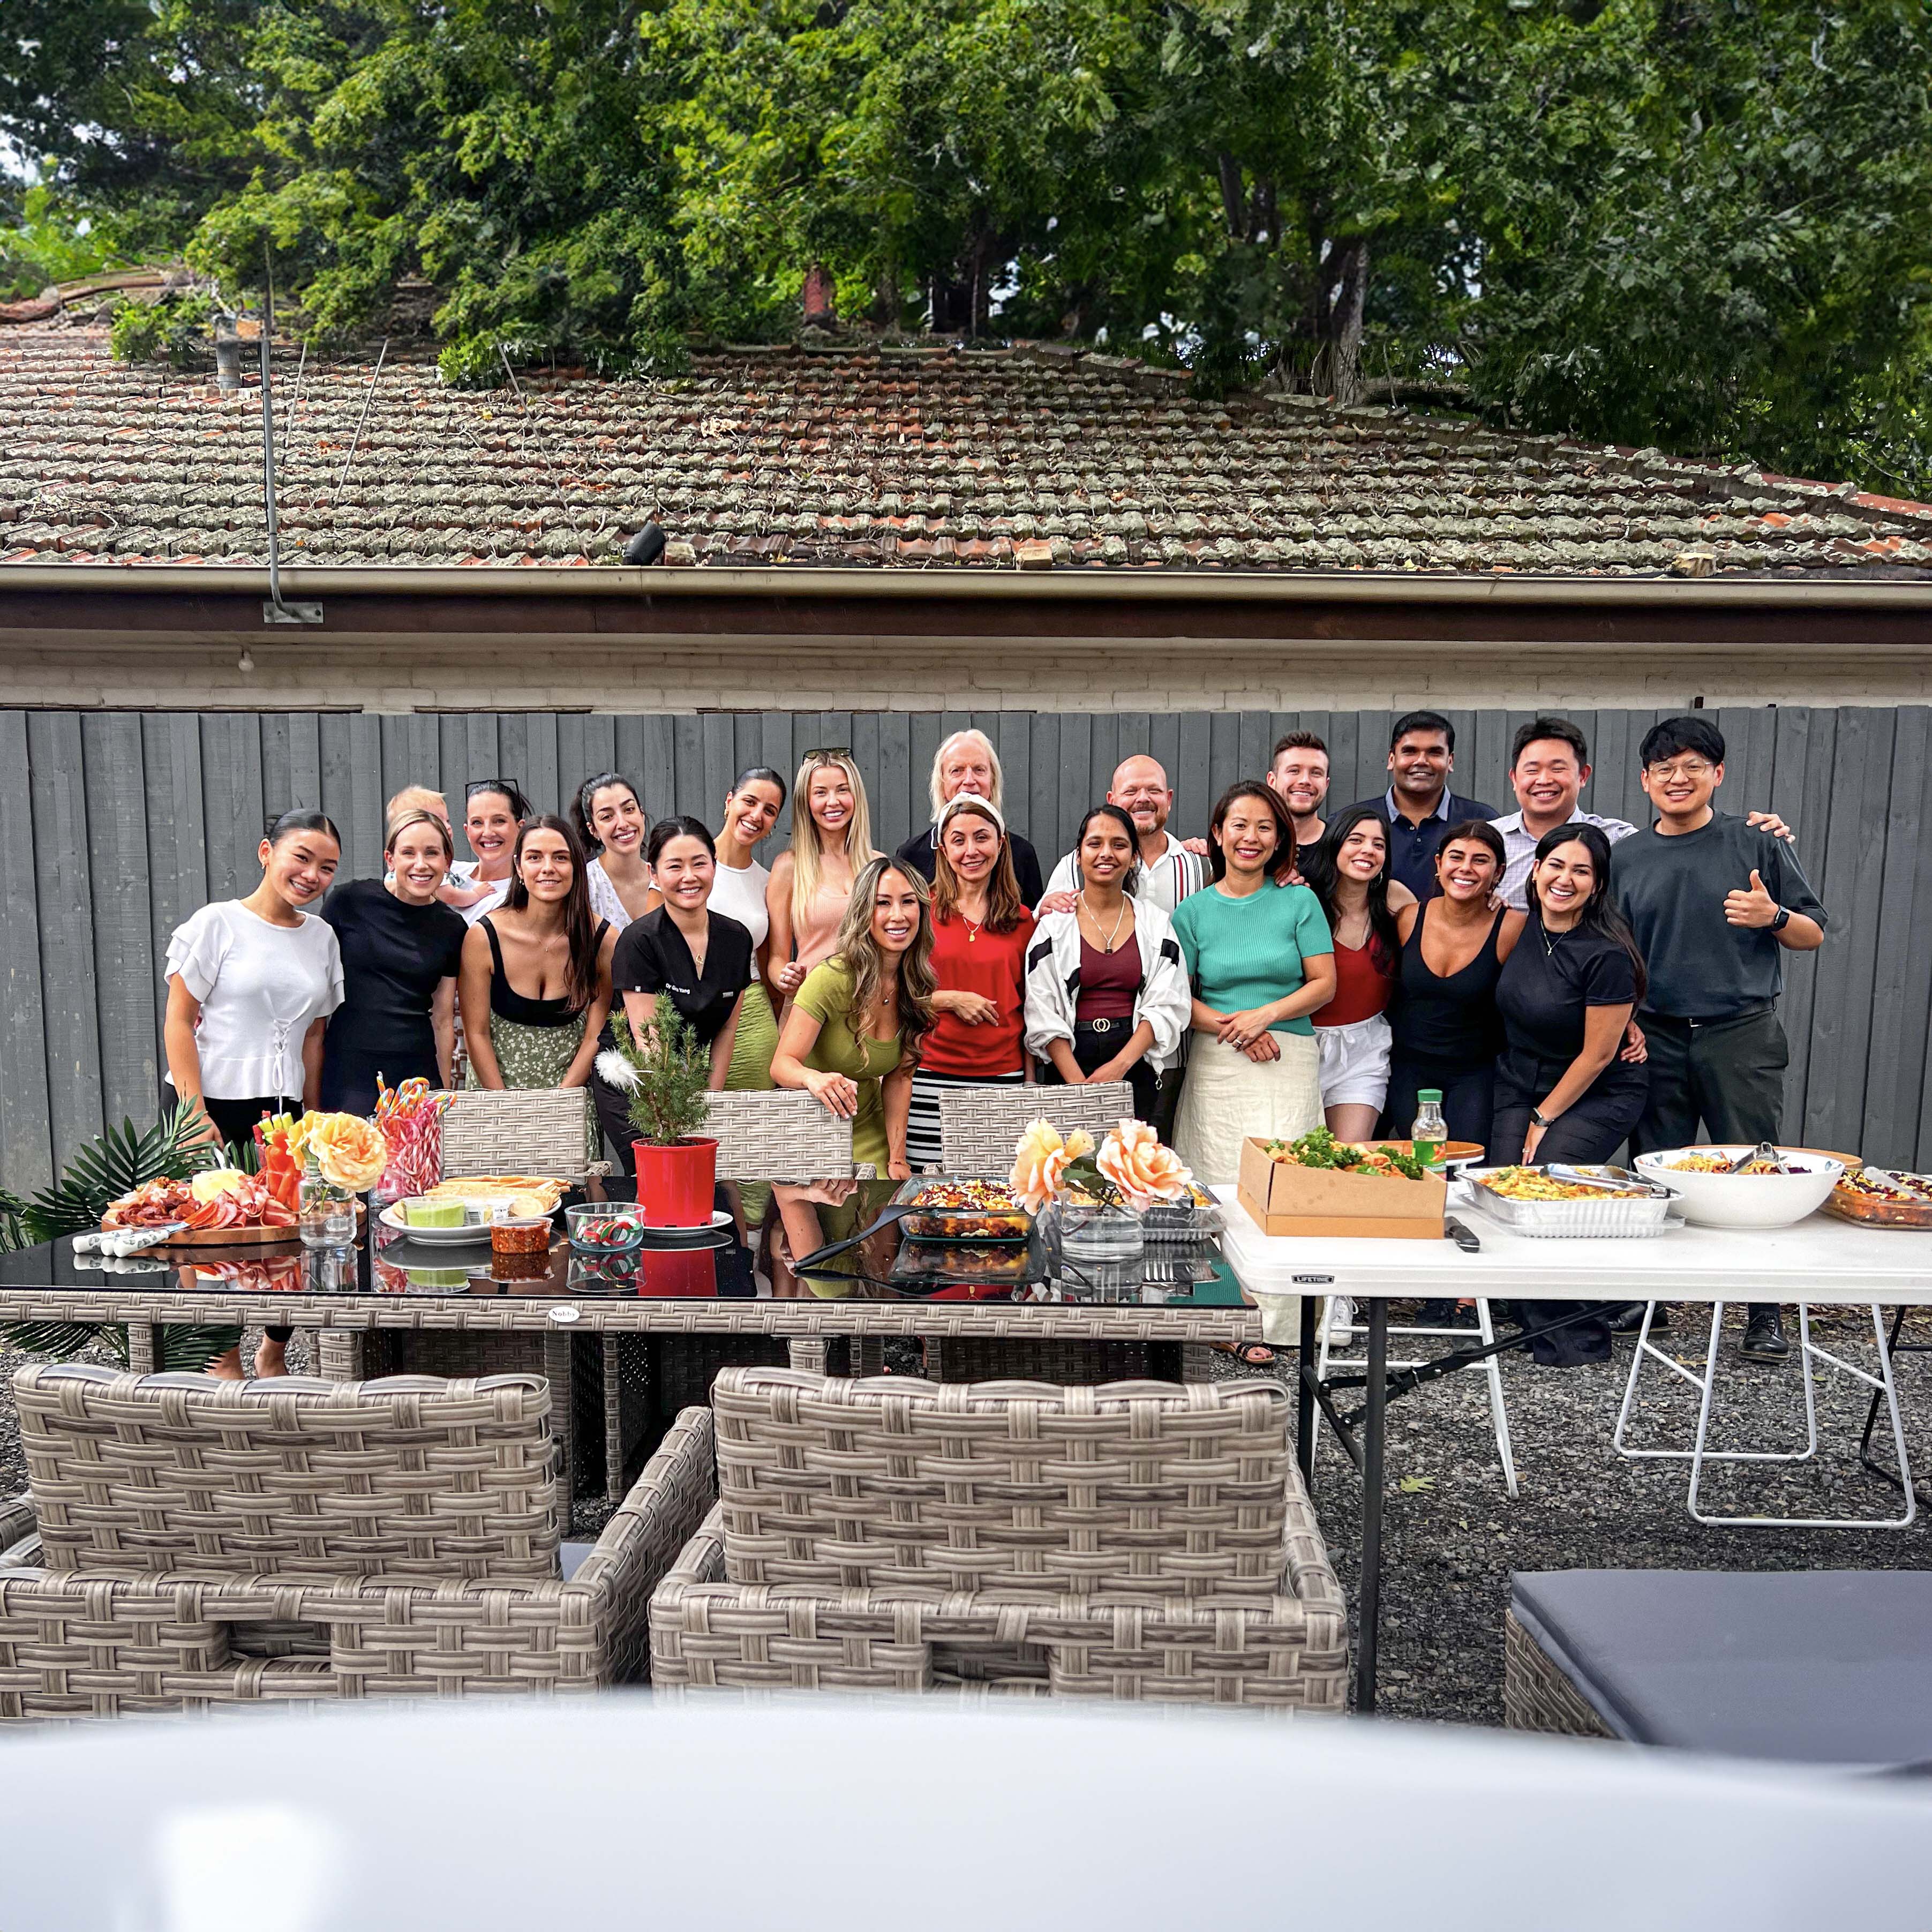 Vogue Dental Studios Melbourne team enjoying lunch together